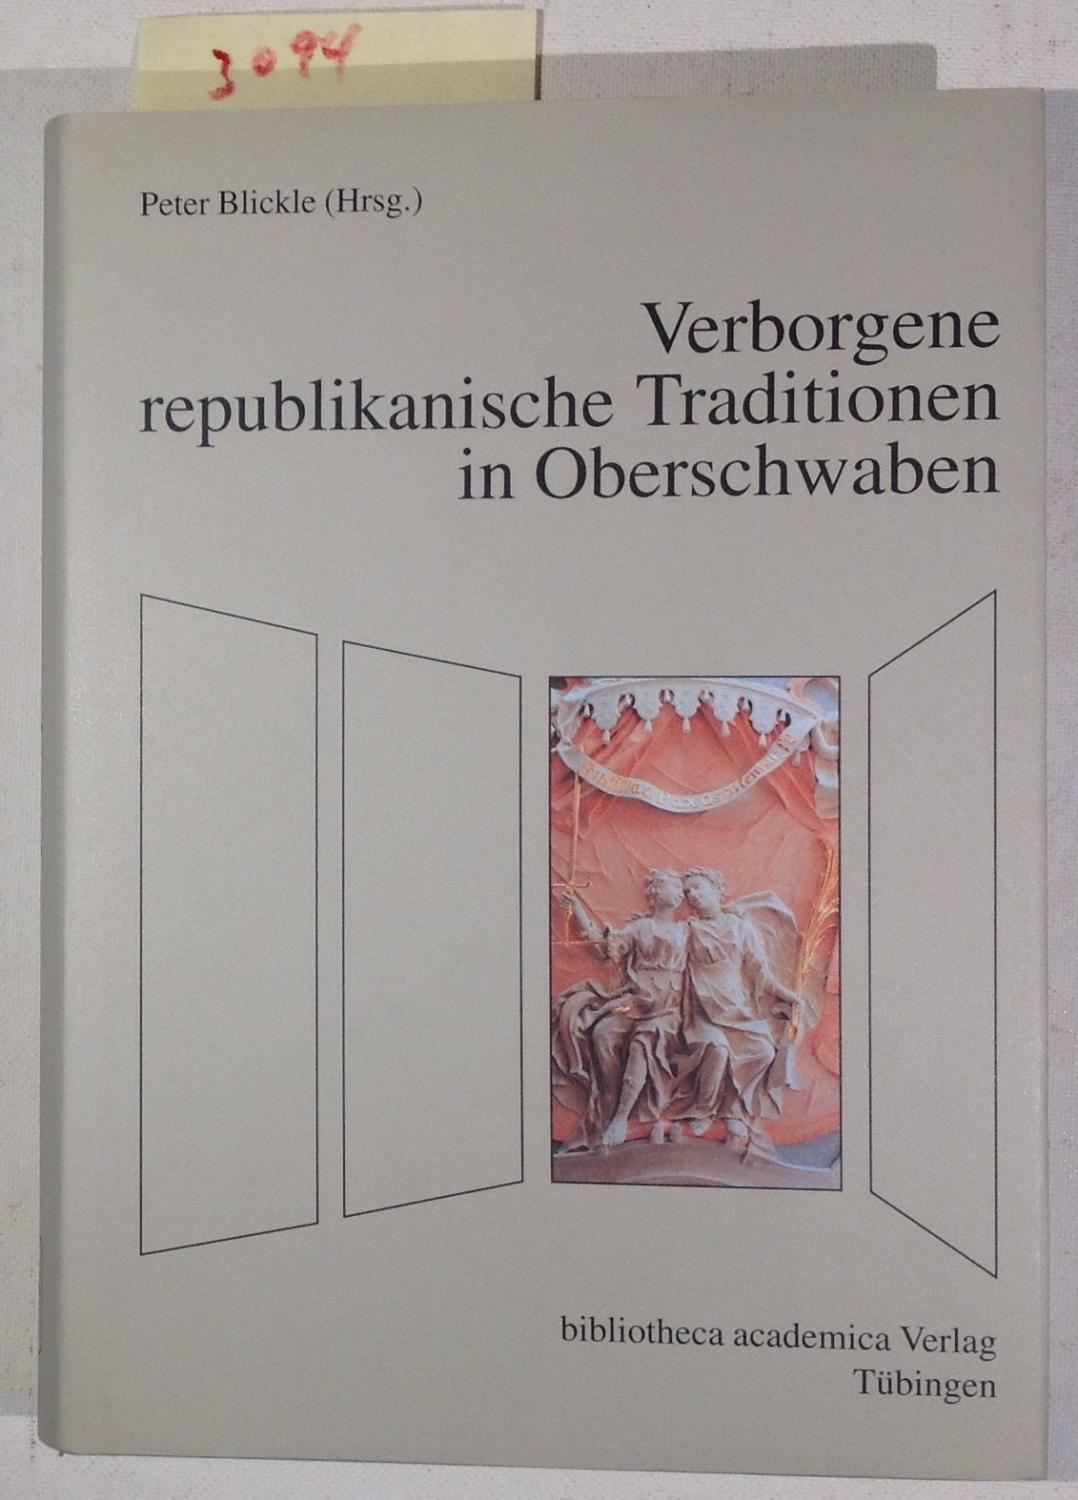 Verborgene Republikanische Traditionen in Oberschwaben - Blickle, Peter - Herausgeber